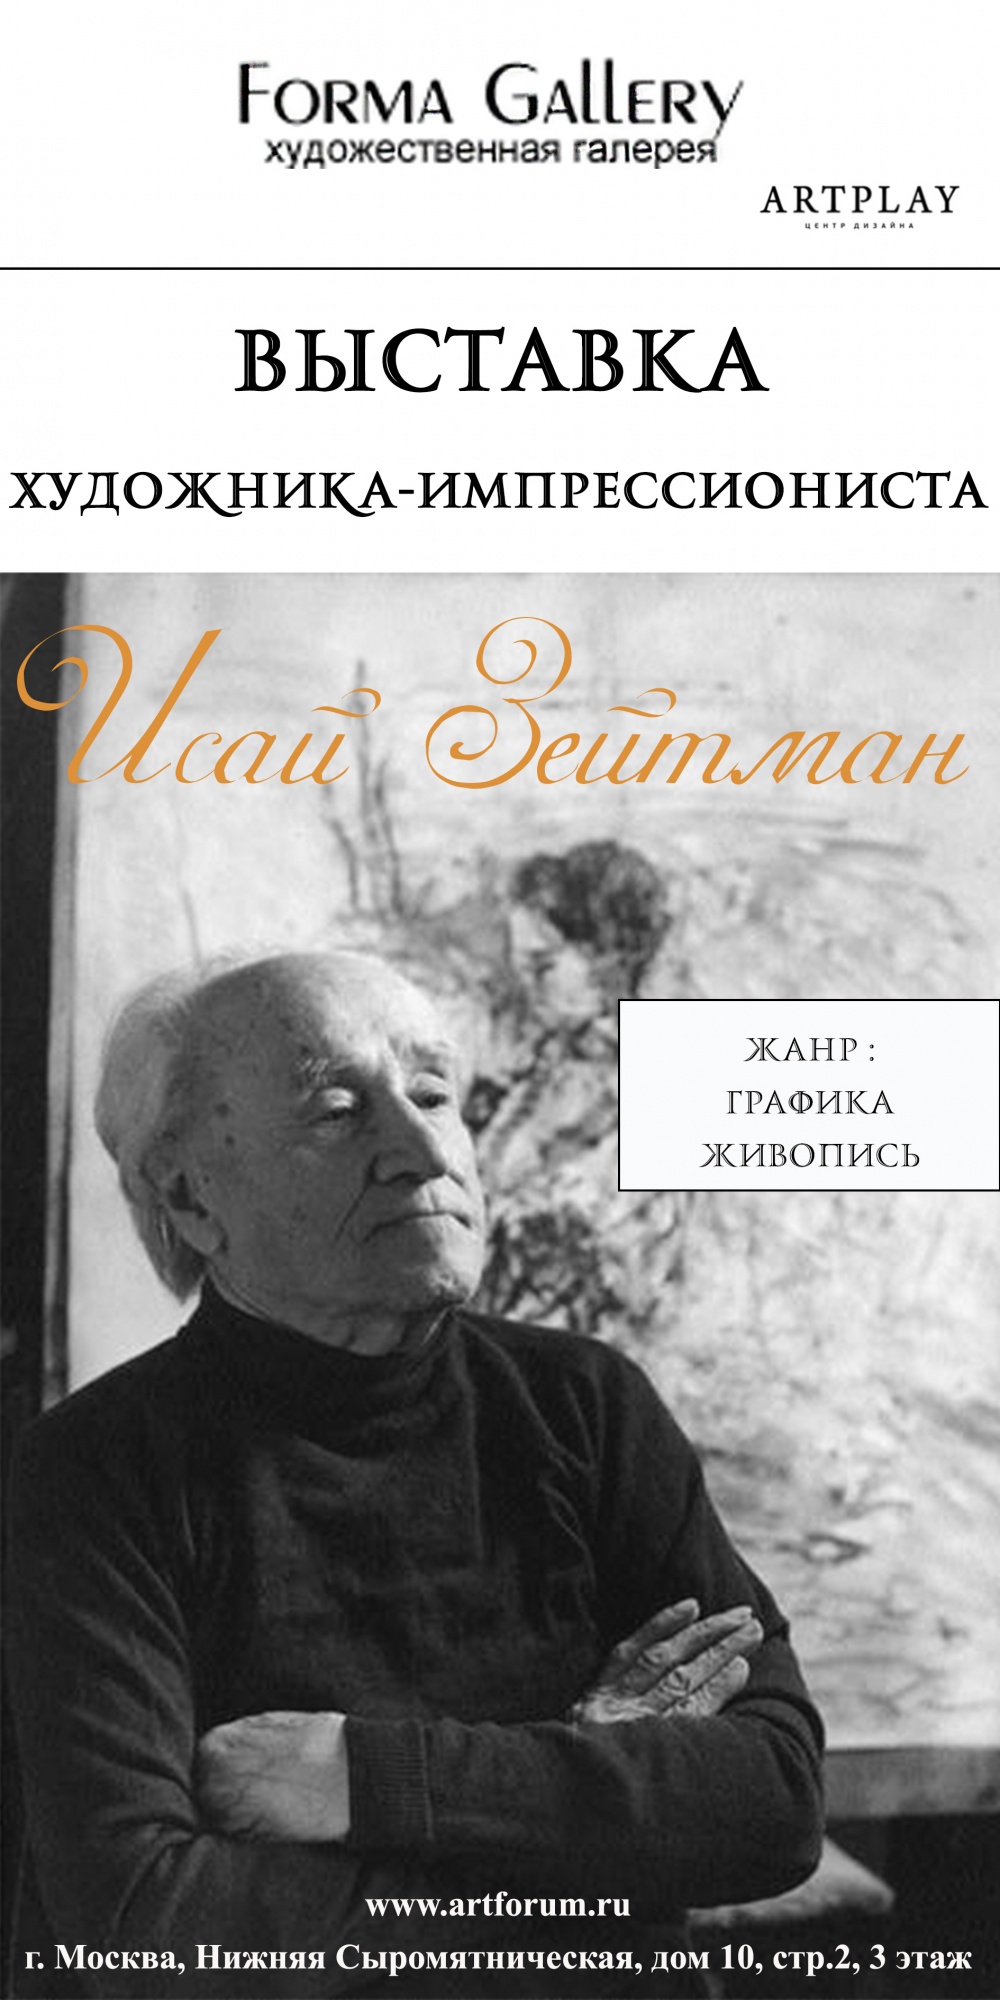 Выставка Зейтмана Исая Михайловича